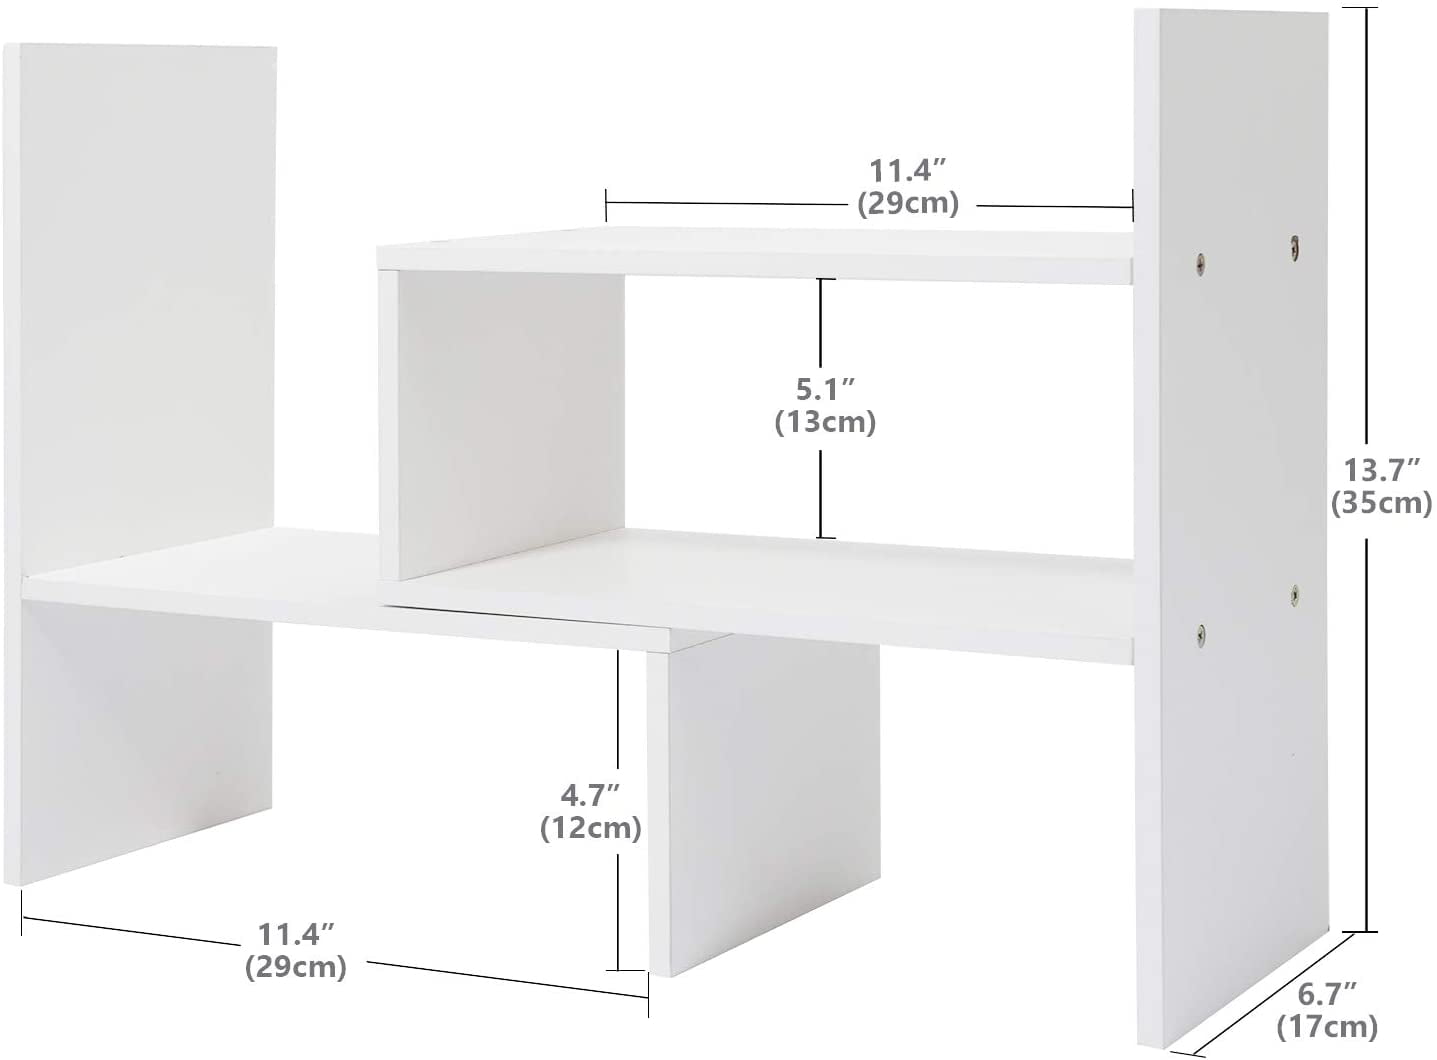 White Desktop Shelf Organizer  Aesthetic Room Desk Decor - roomtery